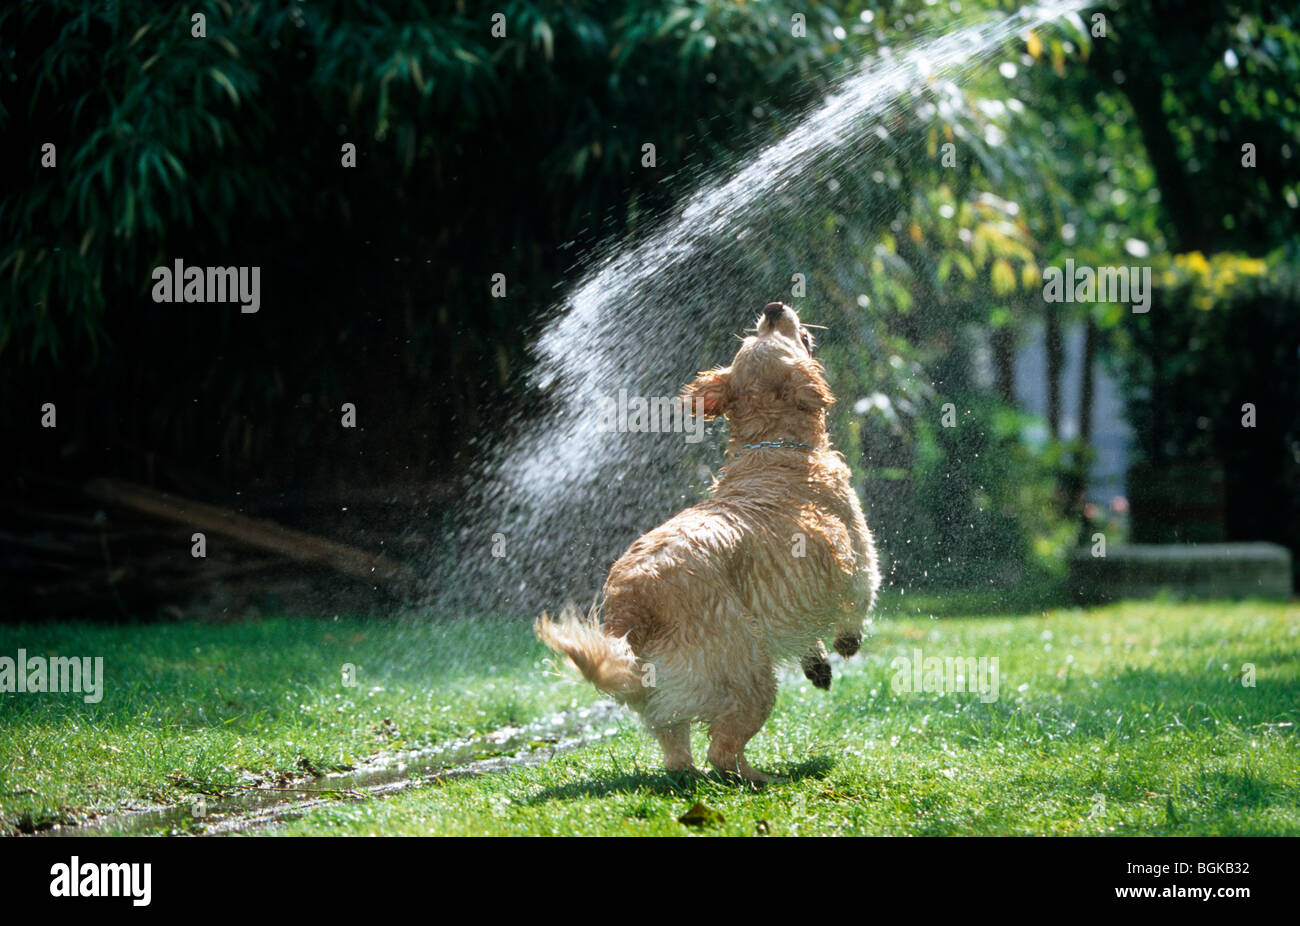 Spielerische Golden Retriever Hund spielen mit Wasser aus Gartenschlauch Stockfoto